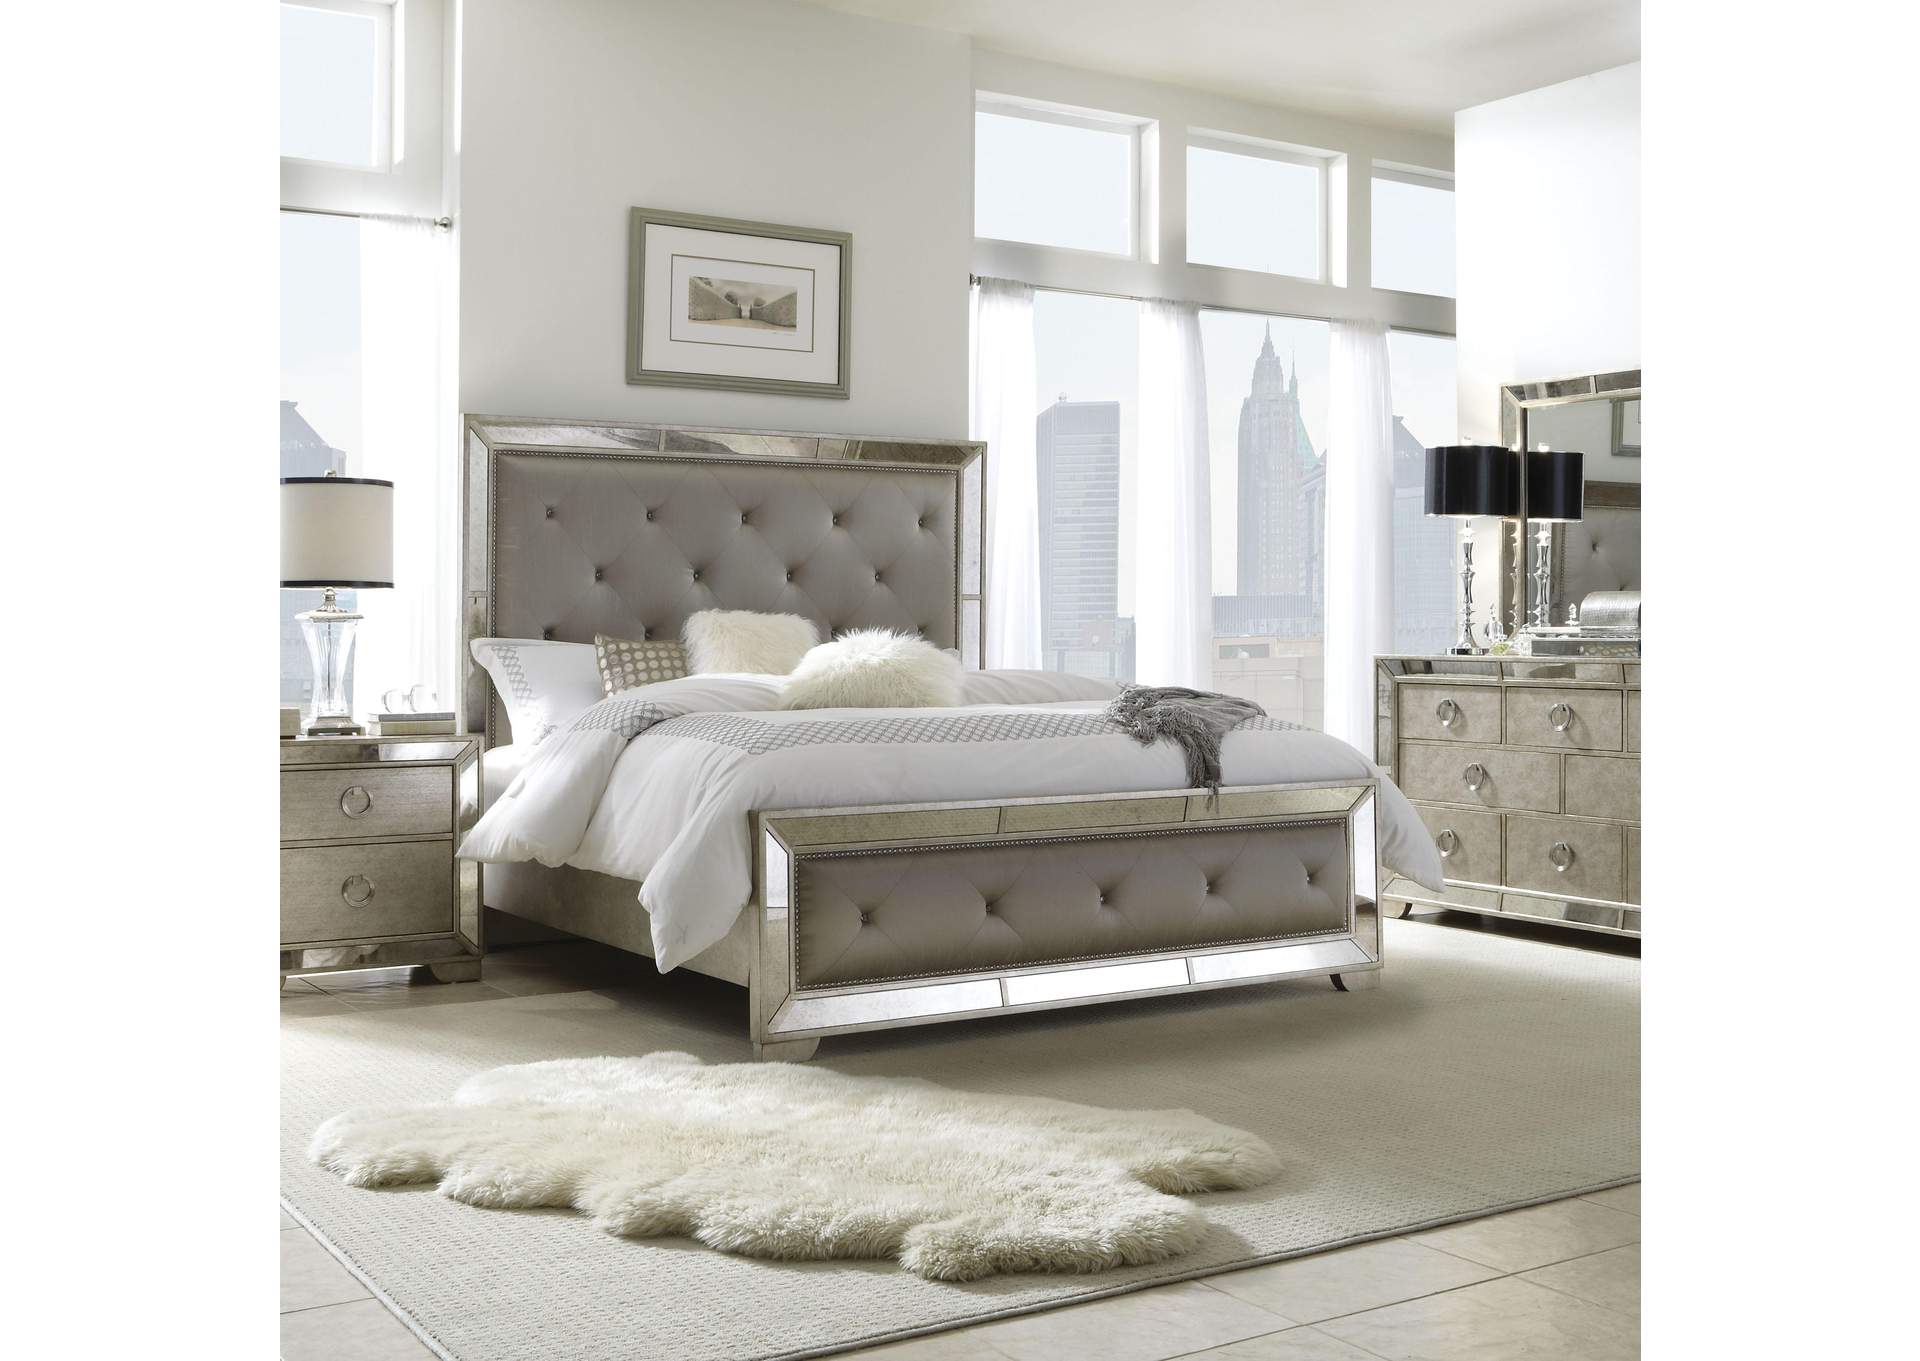 Farrah King Bed,Pulaski Furniture